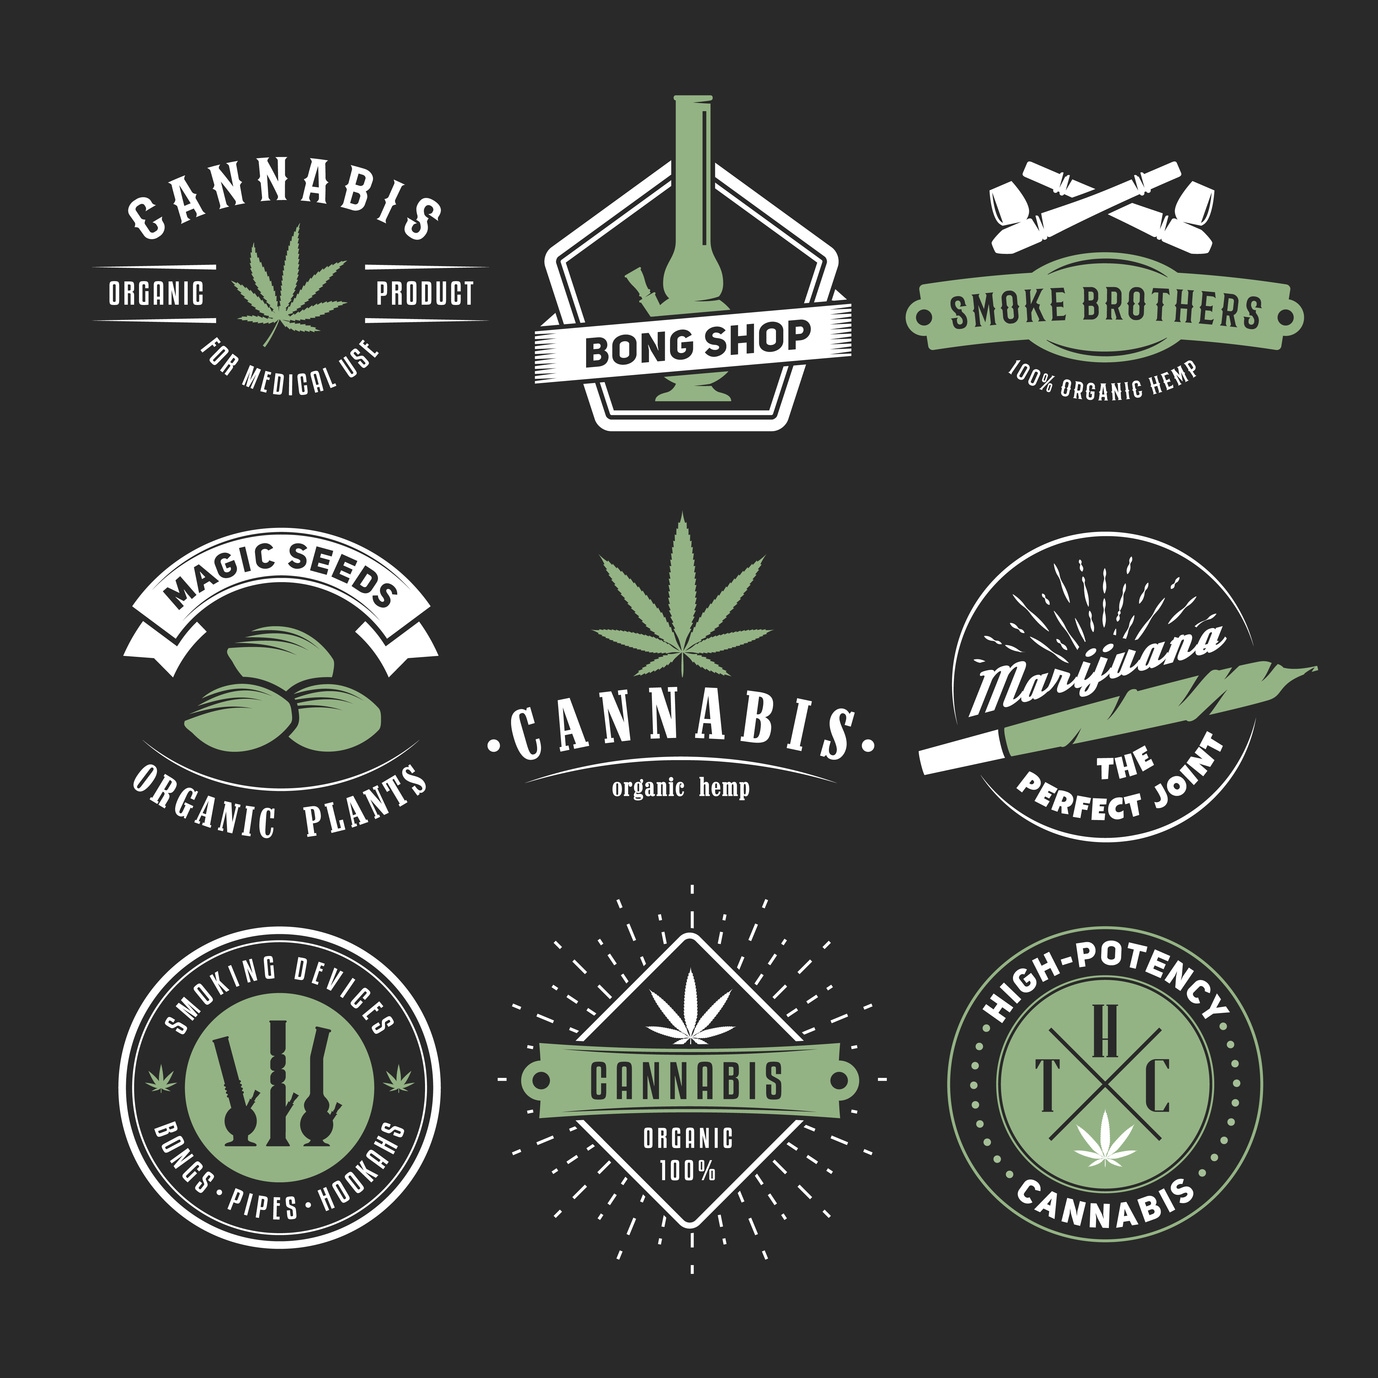 Cannabis Company Logos